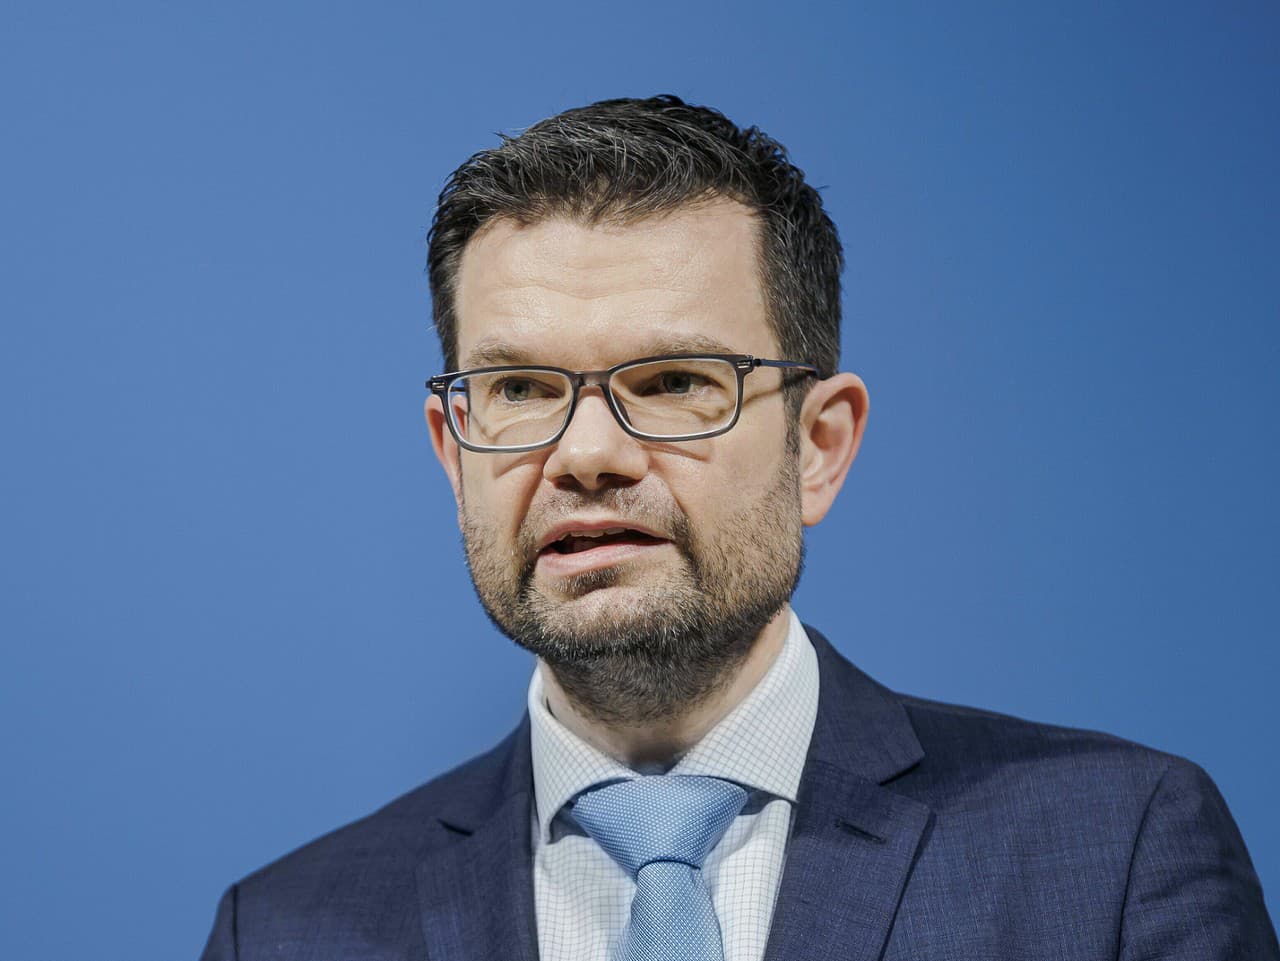 Nemecký minister spravodlivosti Marco Buschmann